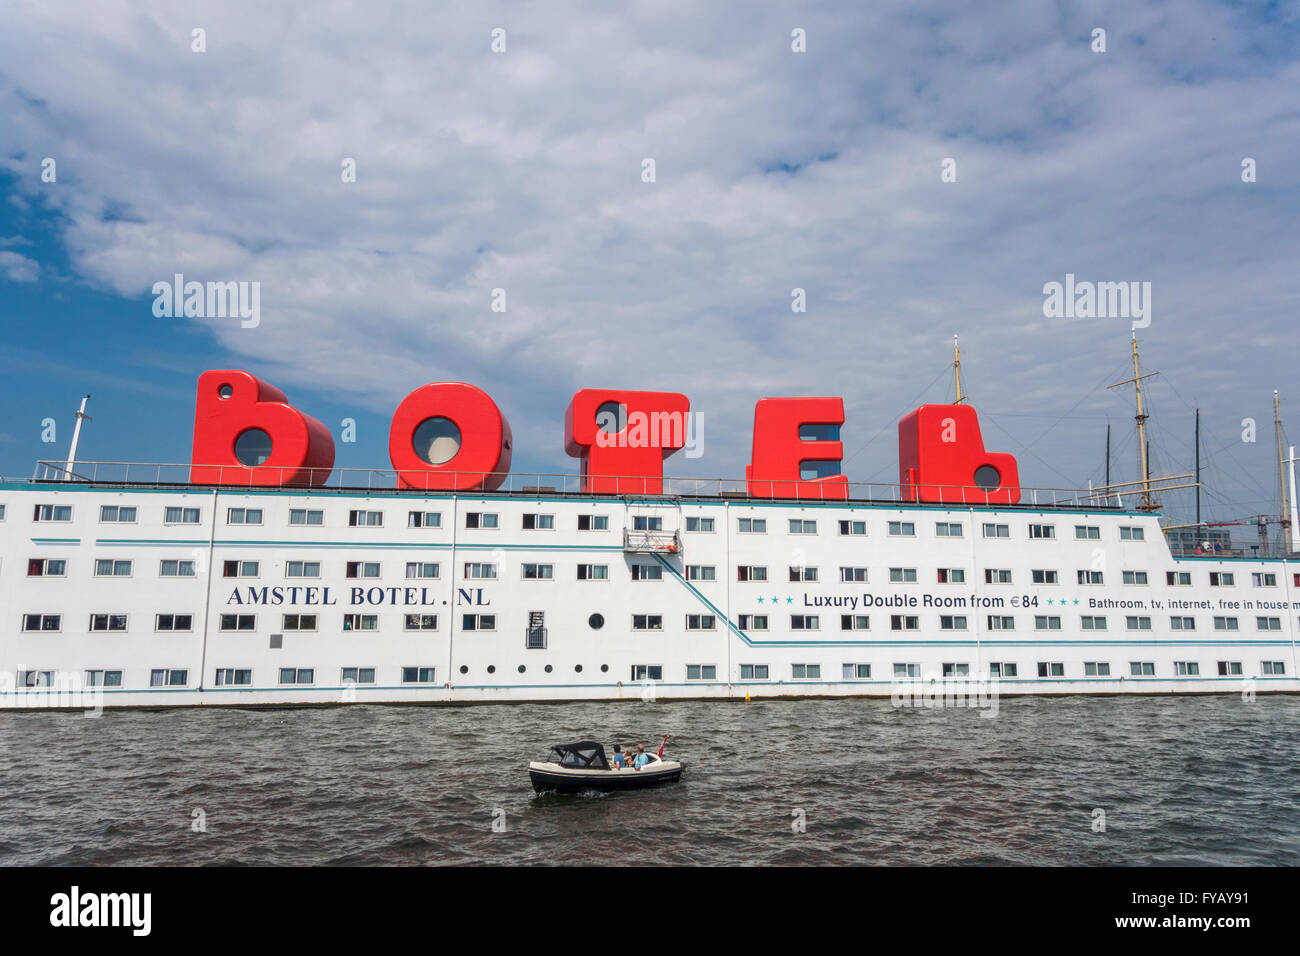 Schwimmendes Hotel Amsterdam Amstel Botel Amsterdam IJ-Hafen mit Gästezimmern im BOTEL Logo loft Zeichen Stockfoto